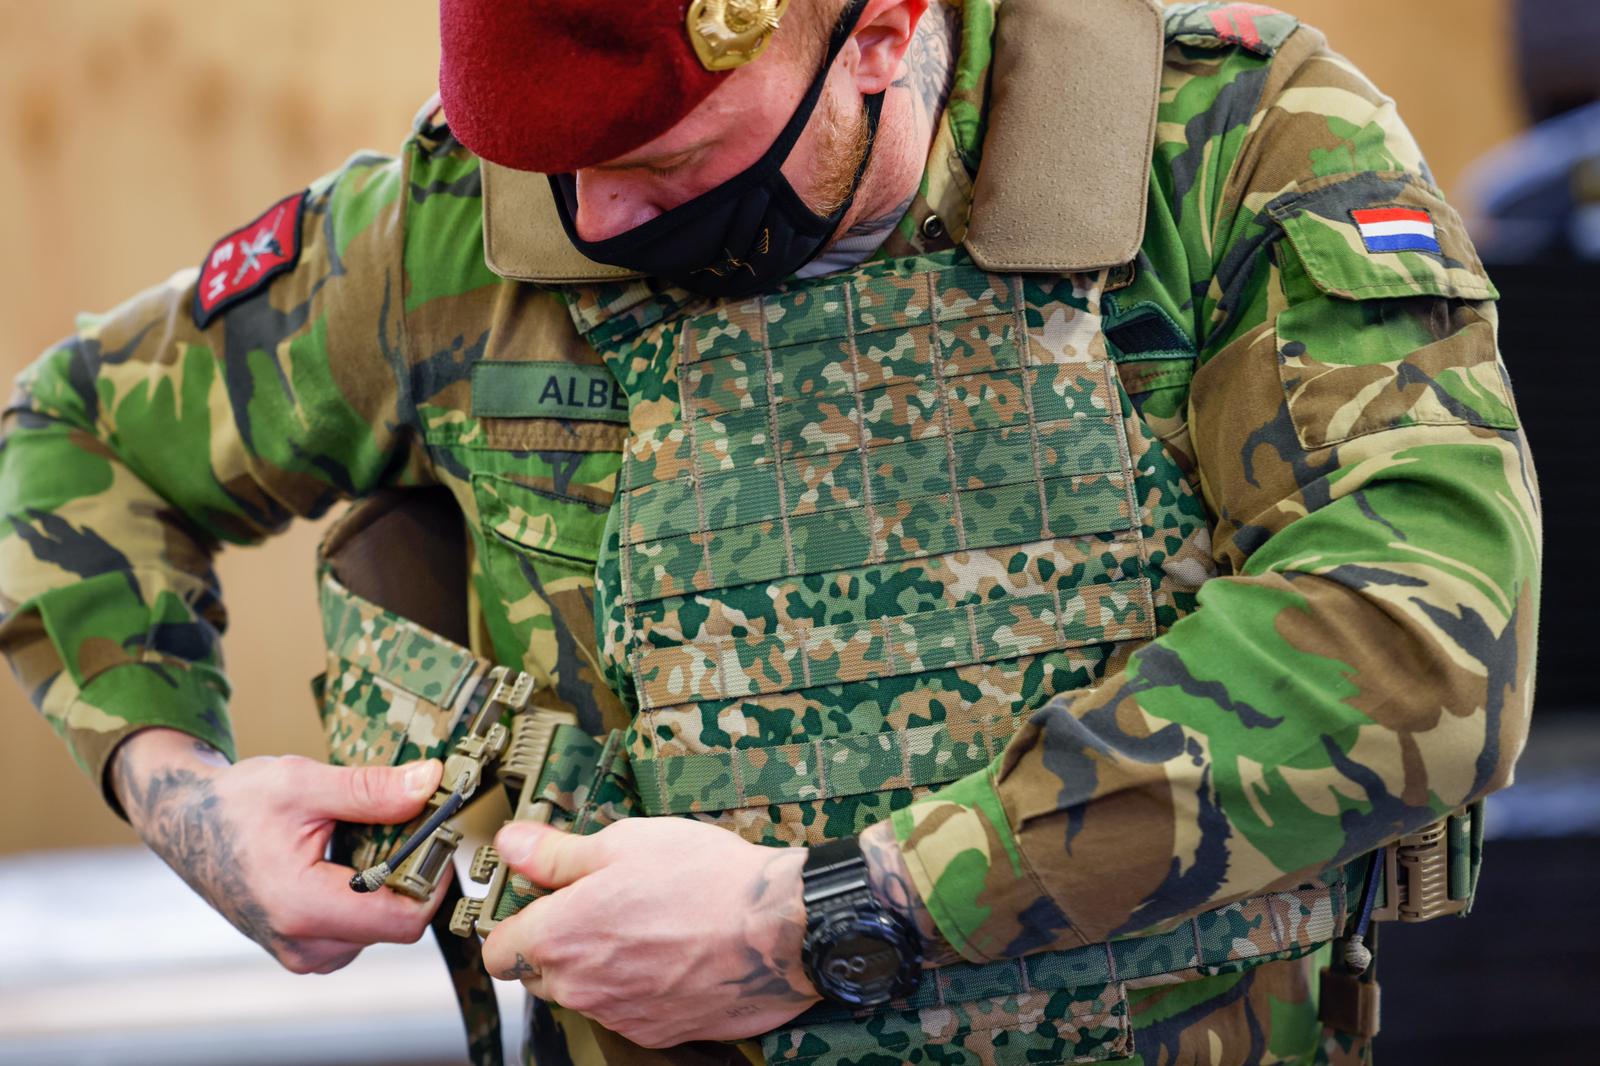 Wiegen grens burgemeester Infanteriebataljon ontvangt als 1e nieuwe helm en uitrusting |  Nieuwsbericht | Defensie.nl